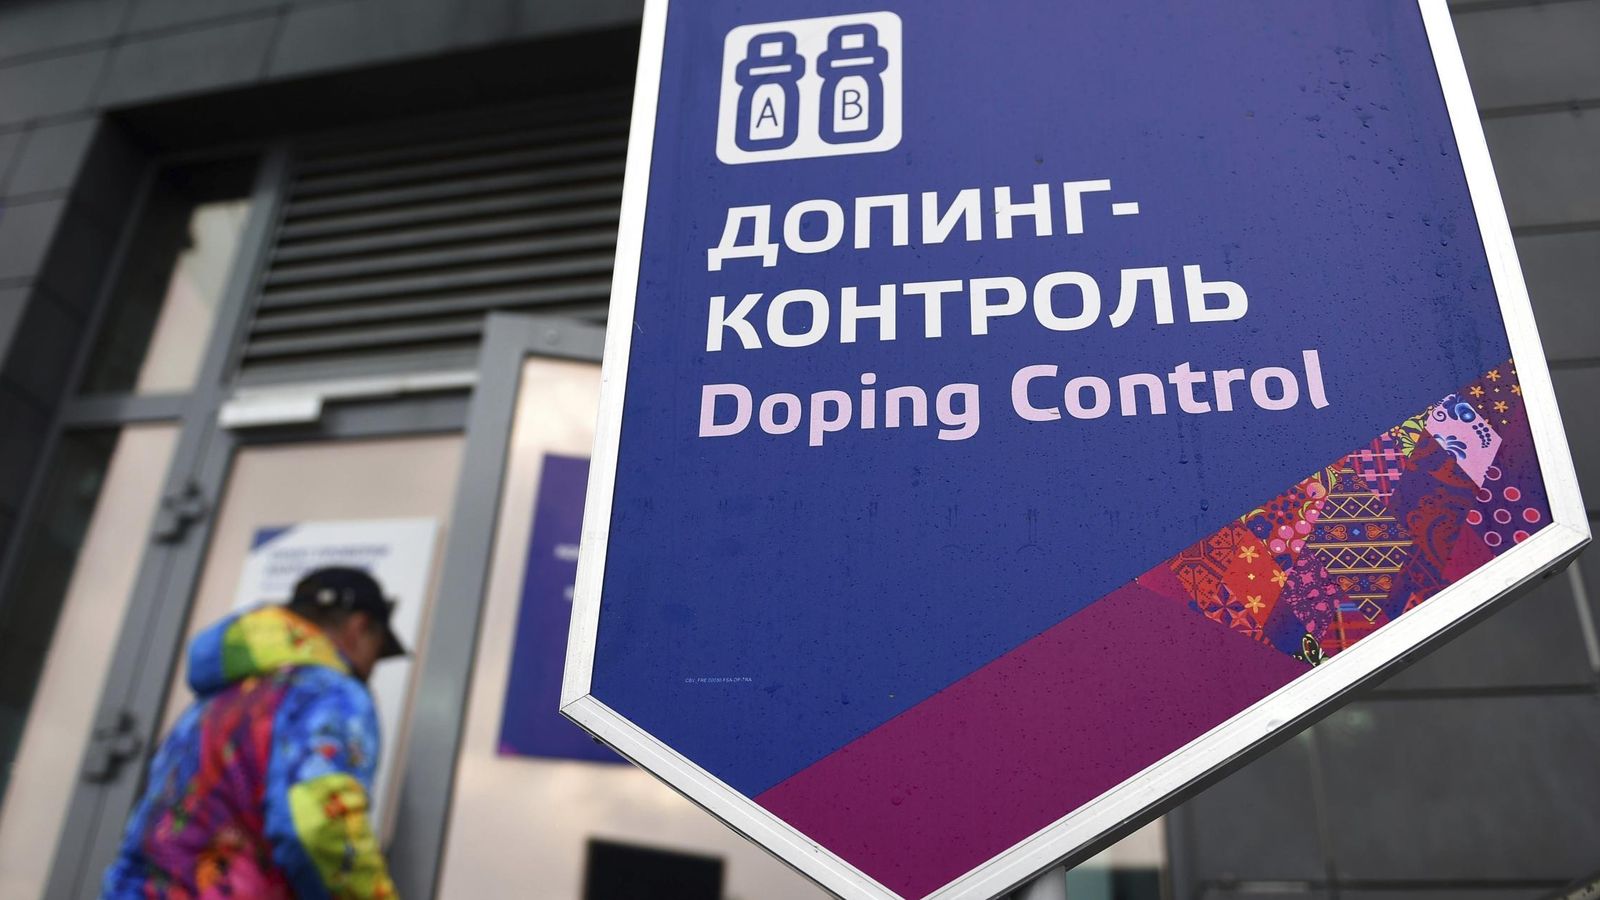 Foto: Oficinas de control de dopaje en Sochi (Efe).